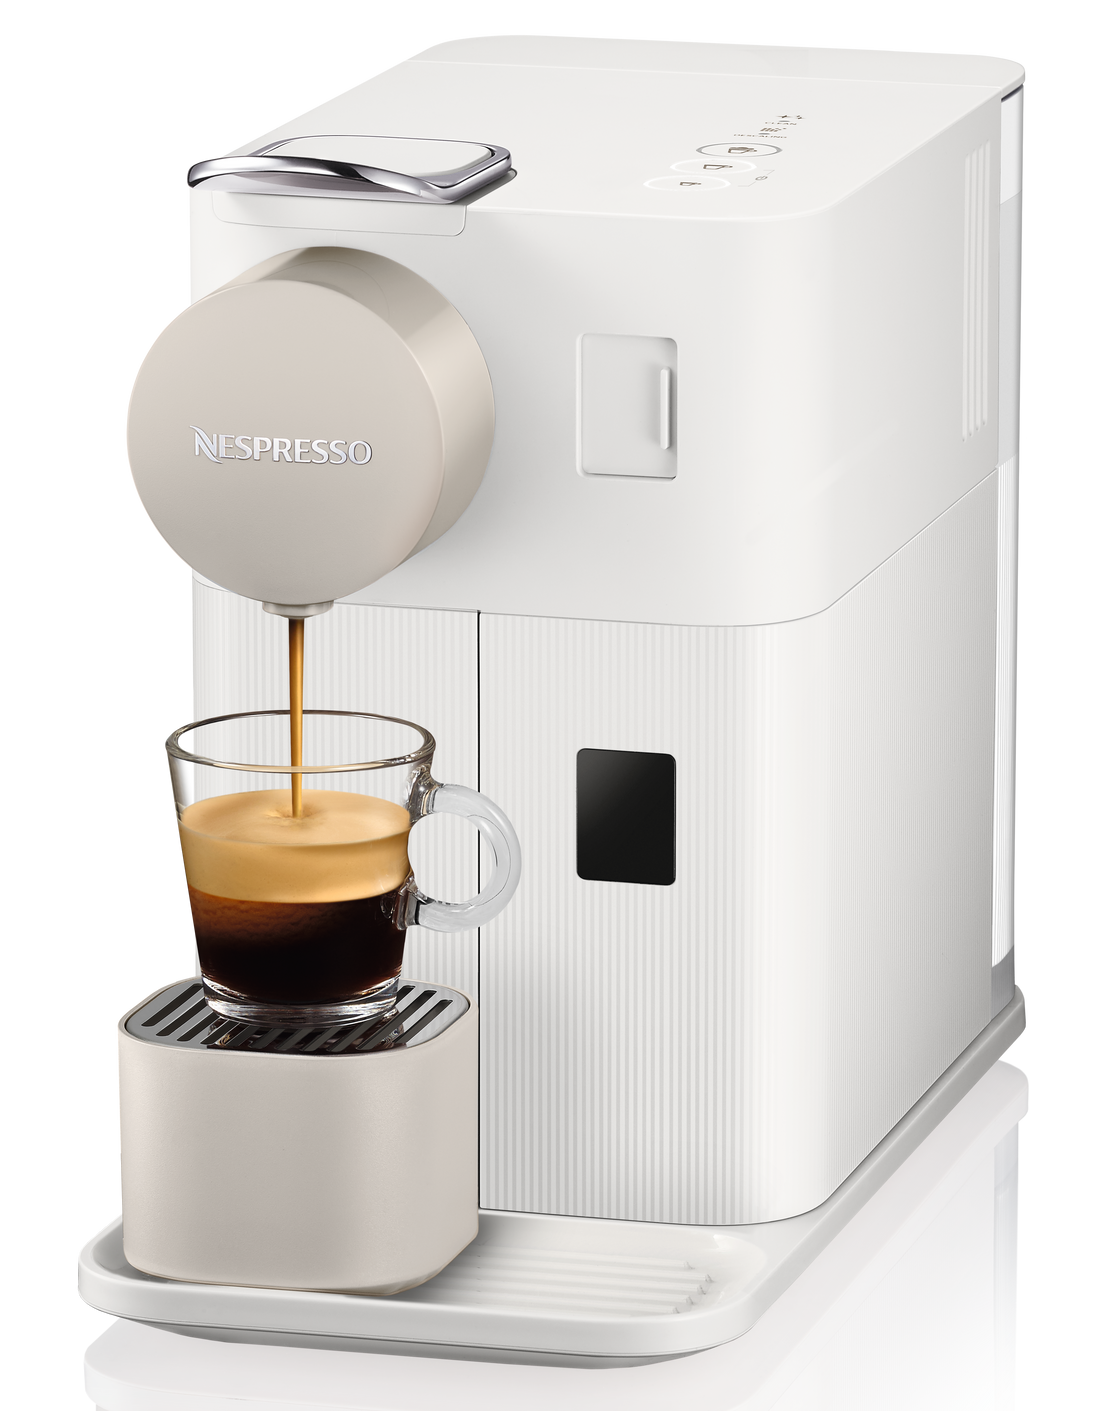 Nespresso Lattissima One Espresso Machine by DeLonghi - Silky White